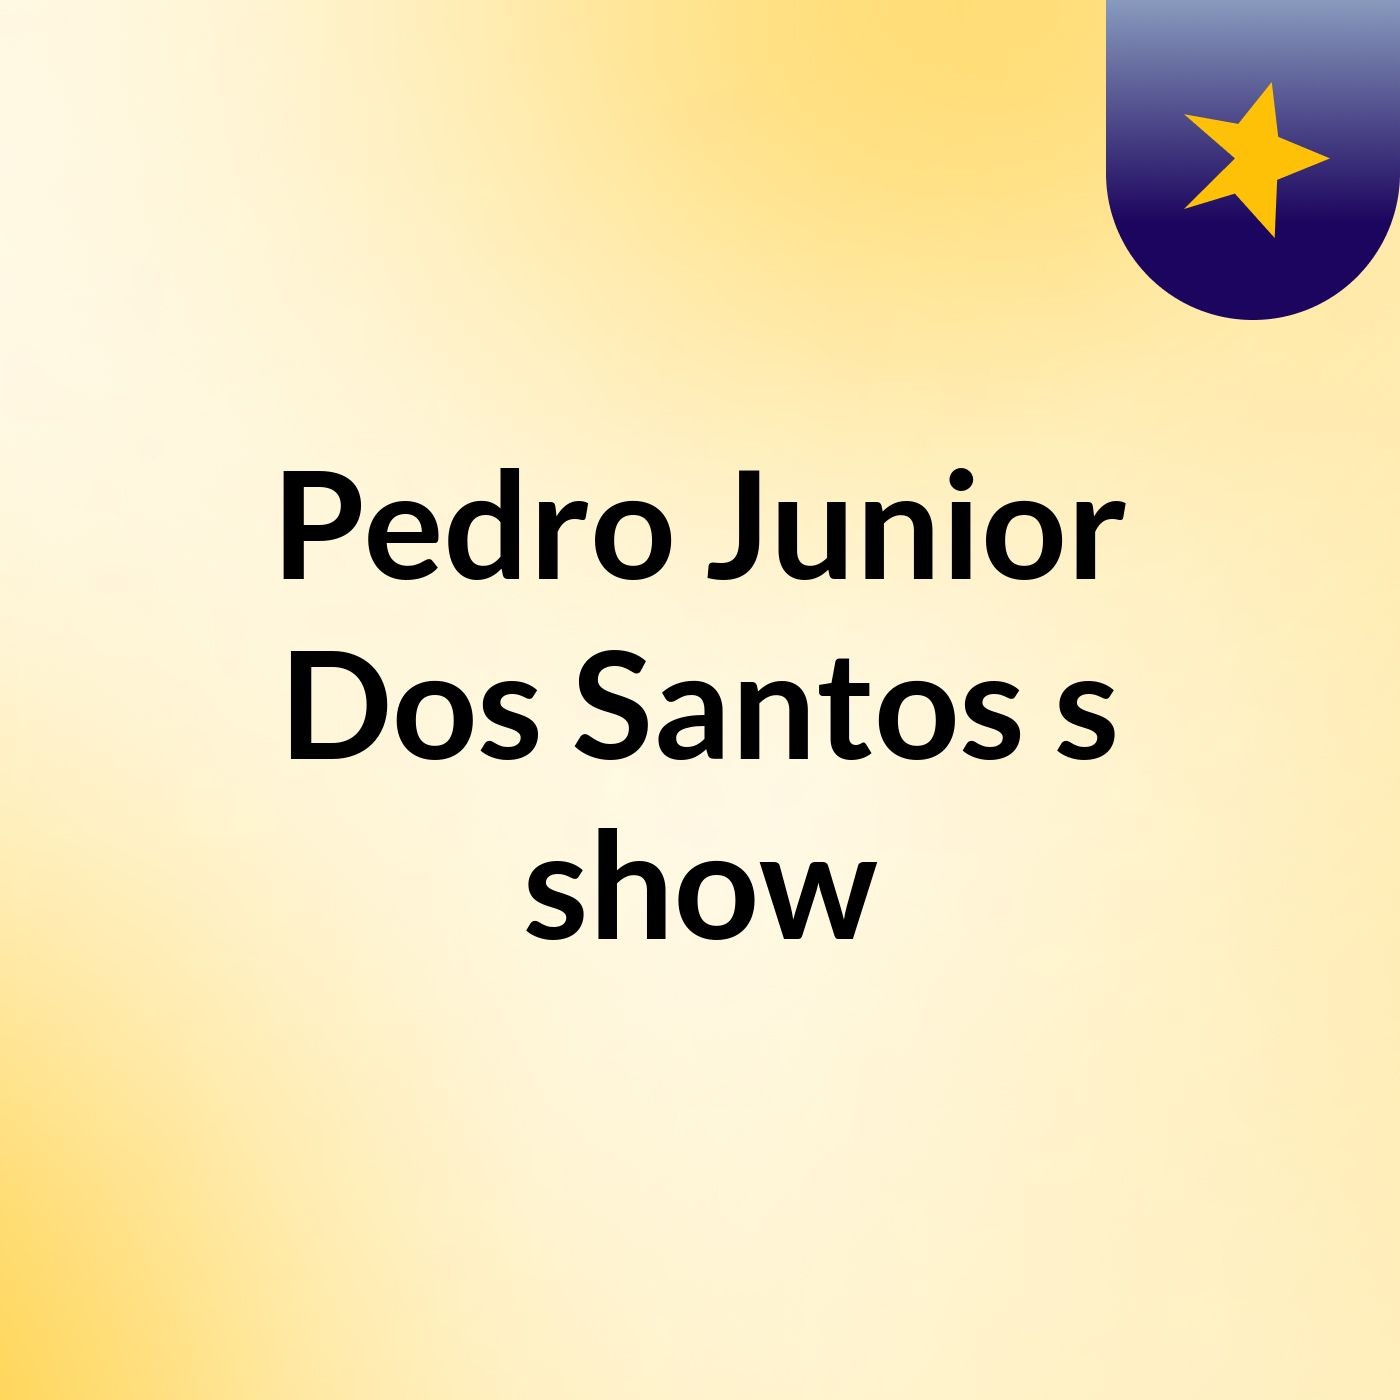 Pedro Junior Dos Santos's show